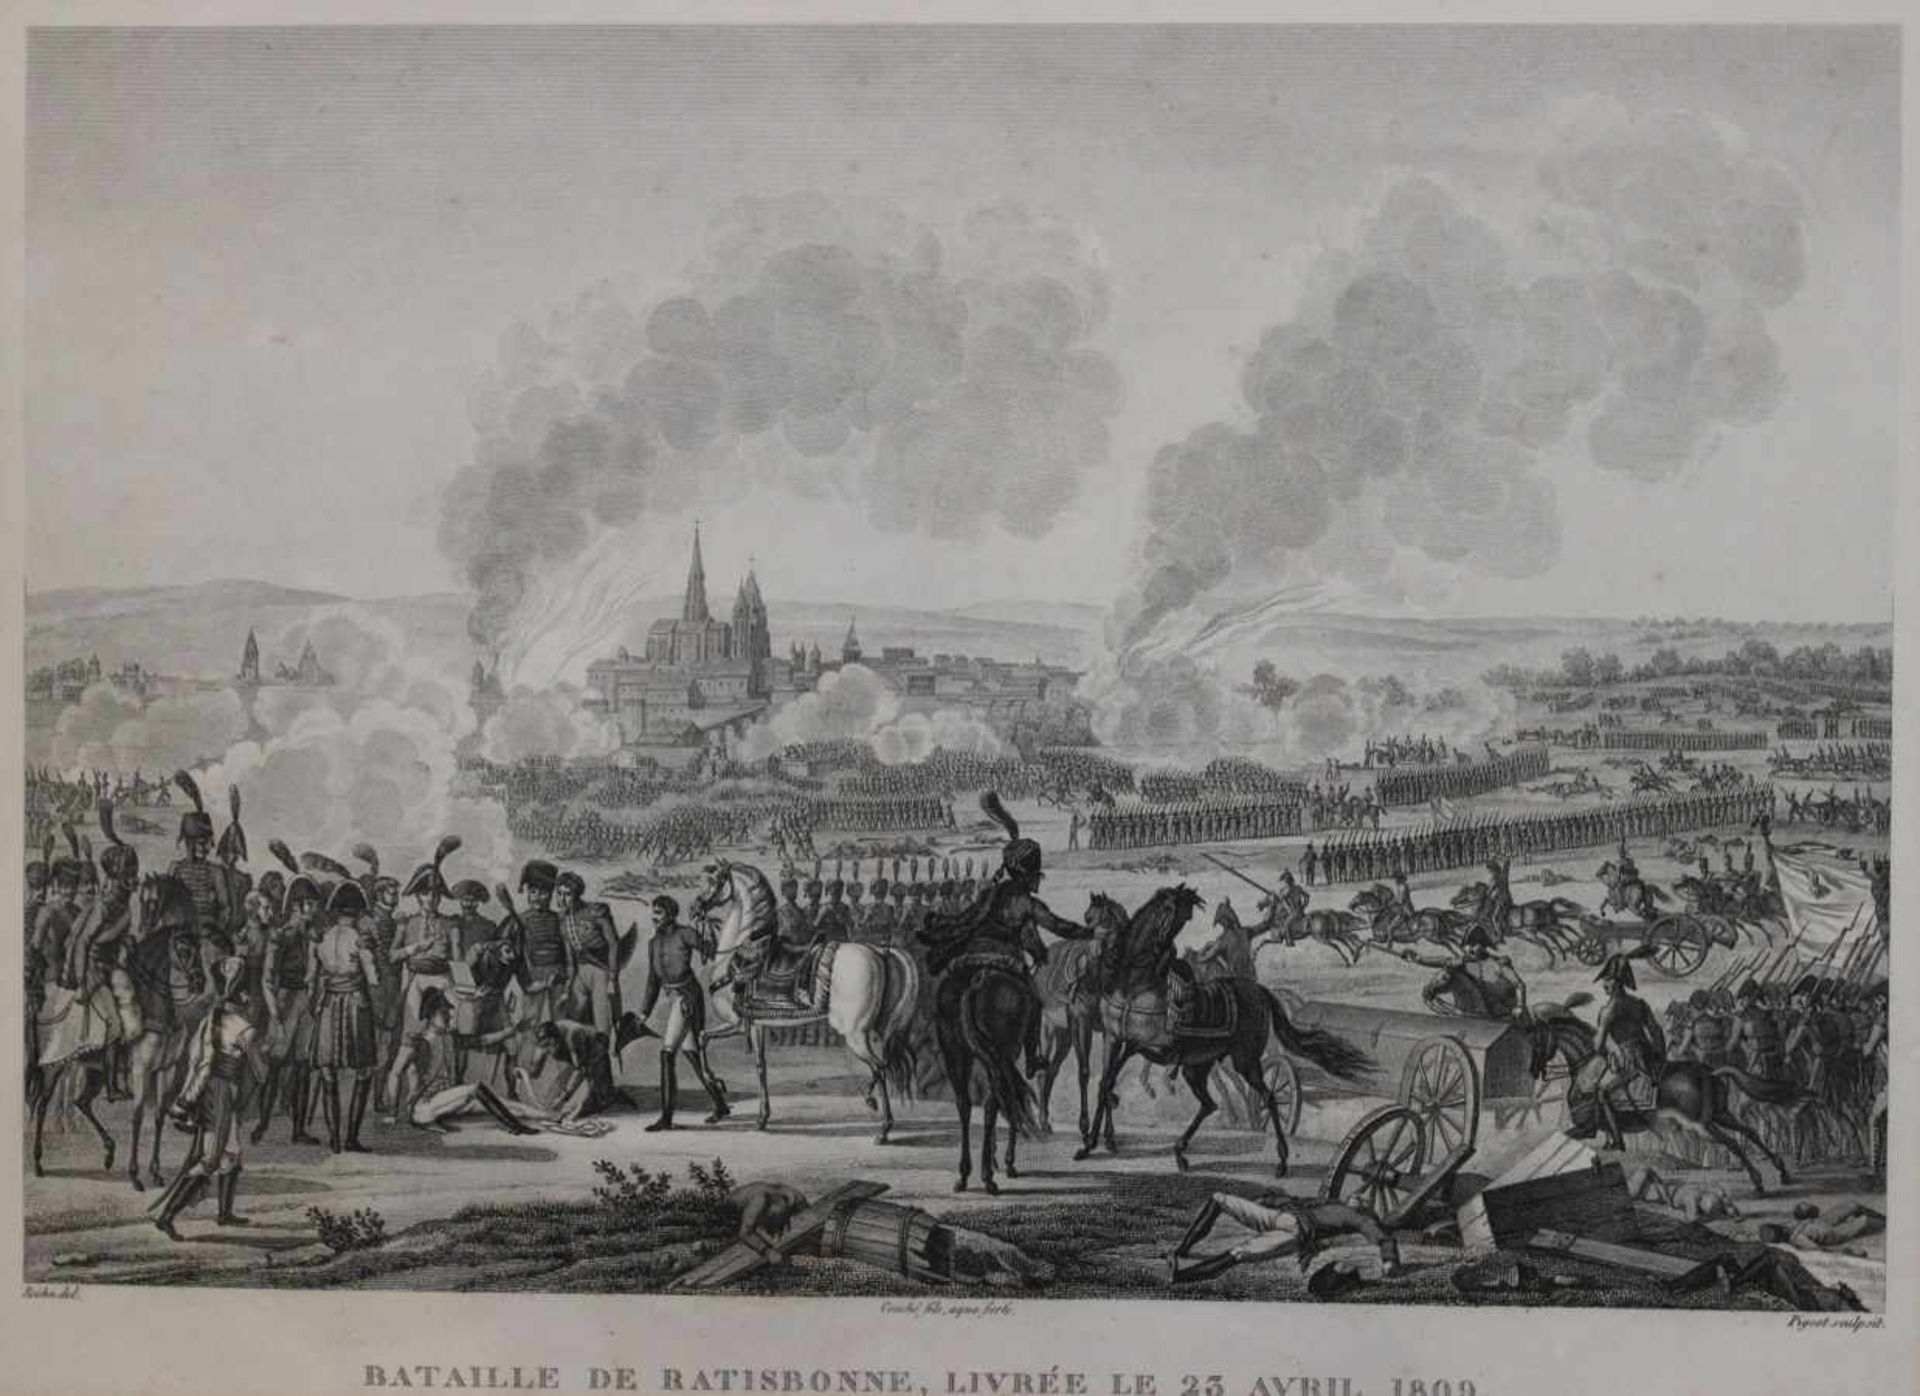 Kupferstich - Francois Pigeot (Paris 1775 - nach 1820) "Bataille de Ratisbonne, Livrée Le 23 Avril